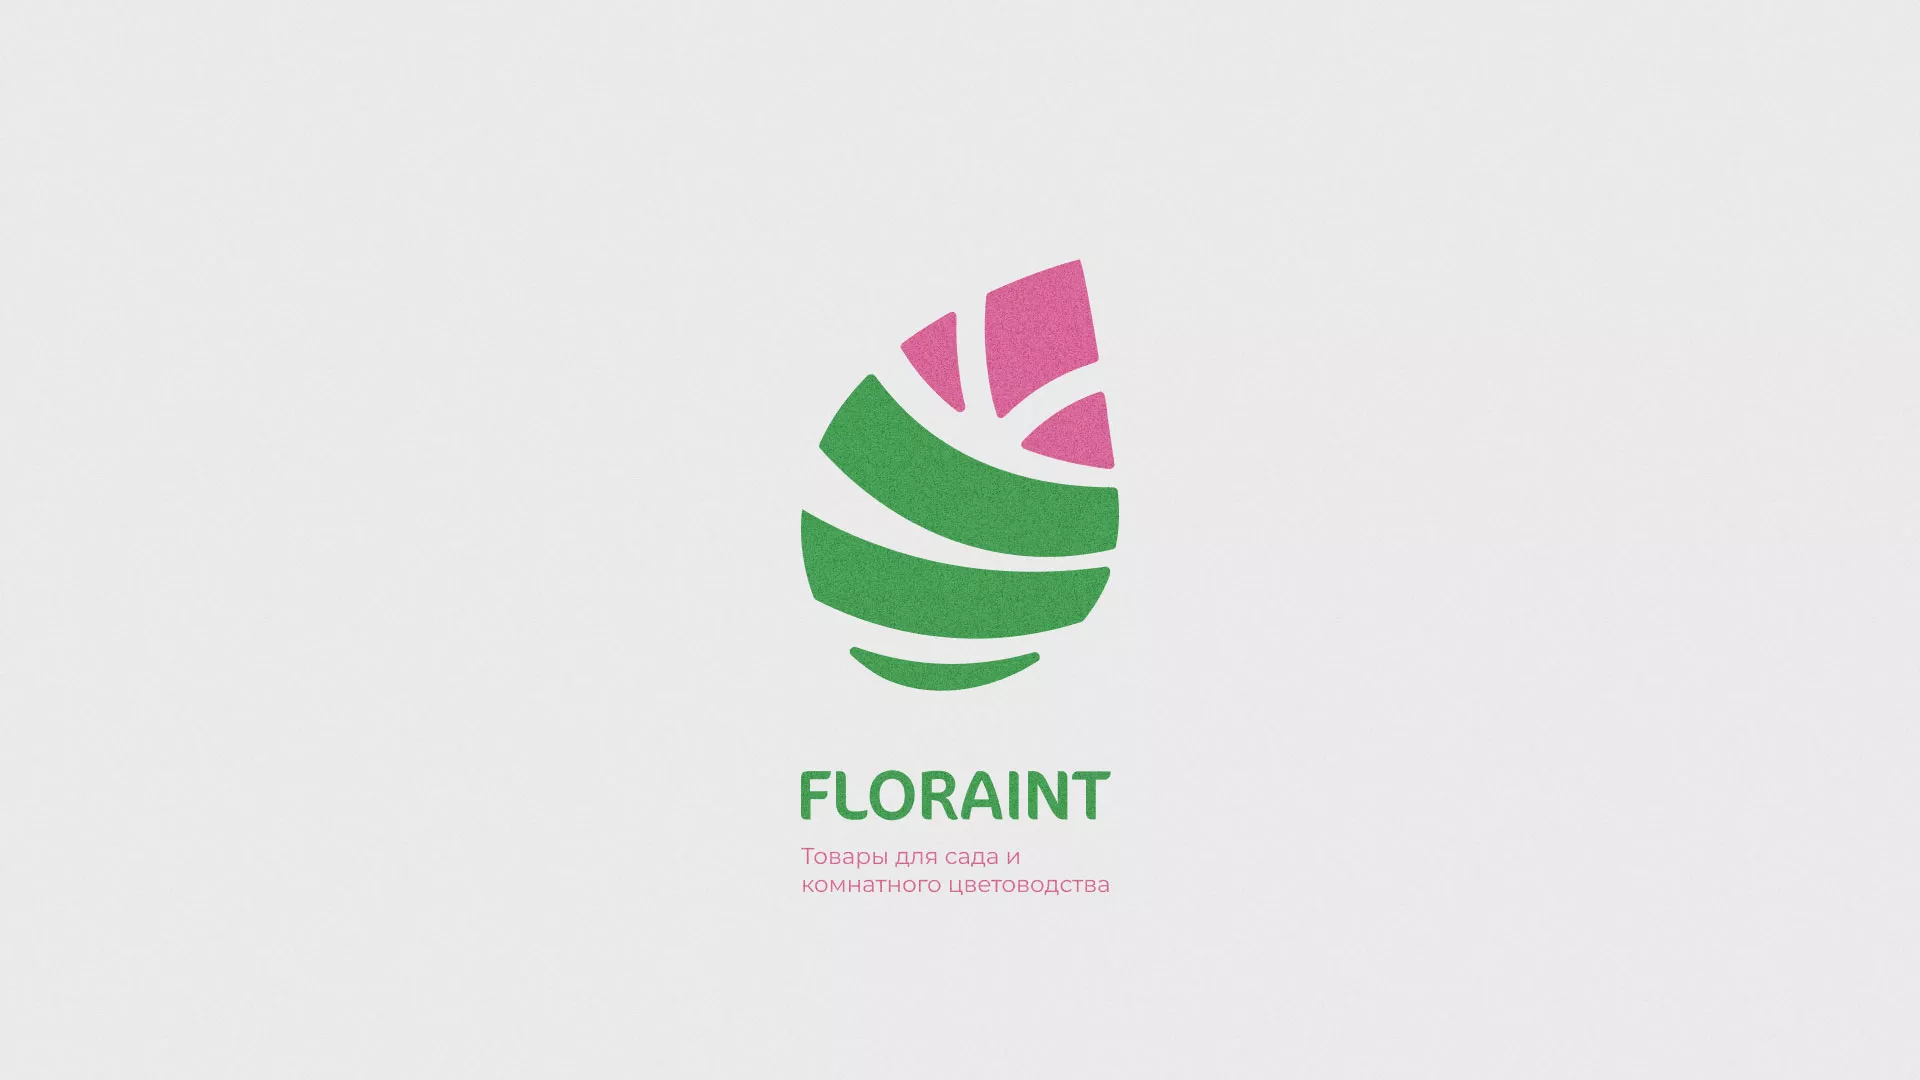 Разработка оформления профиля Instagram для магазина «Floraint» в Кирсанове